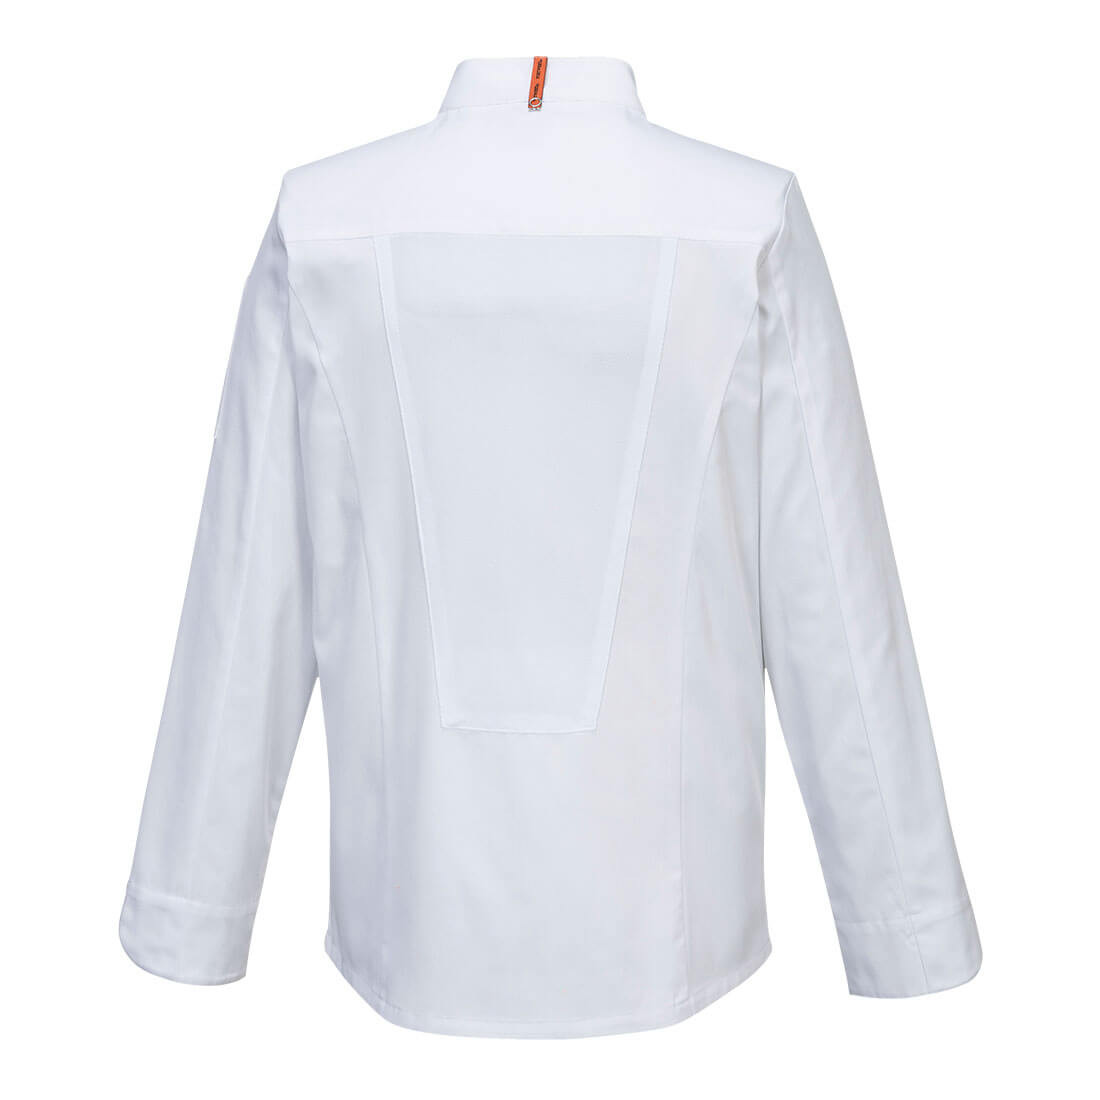 Casacca elastica Mesh Air Pro m/l - Abbigliamento di protezione